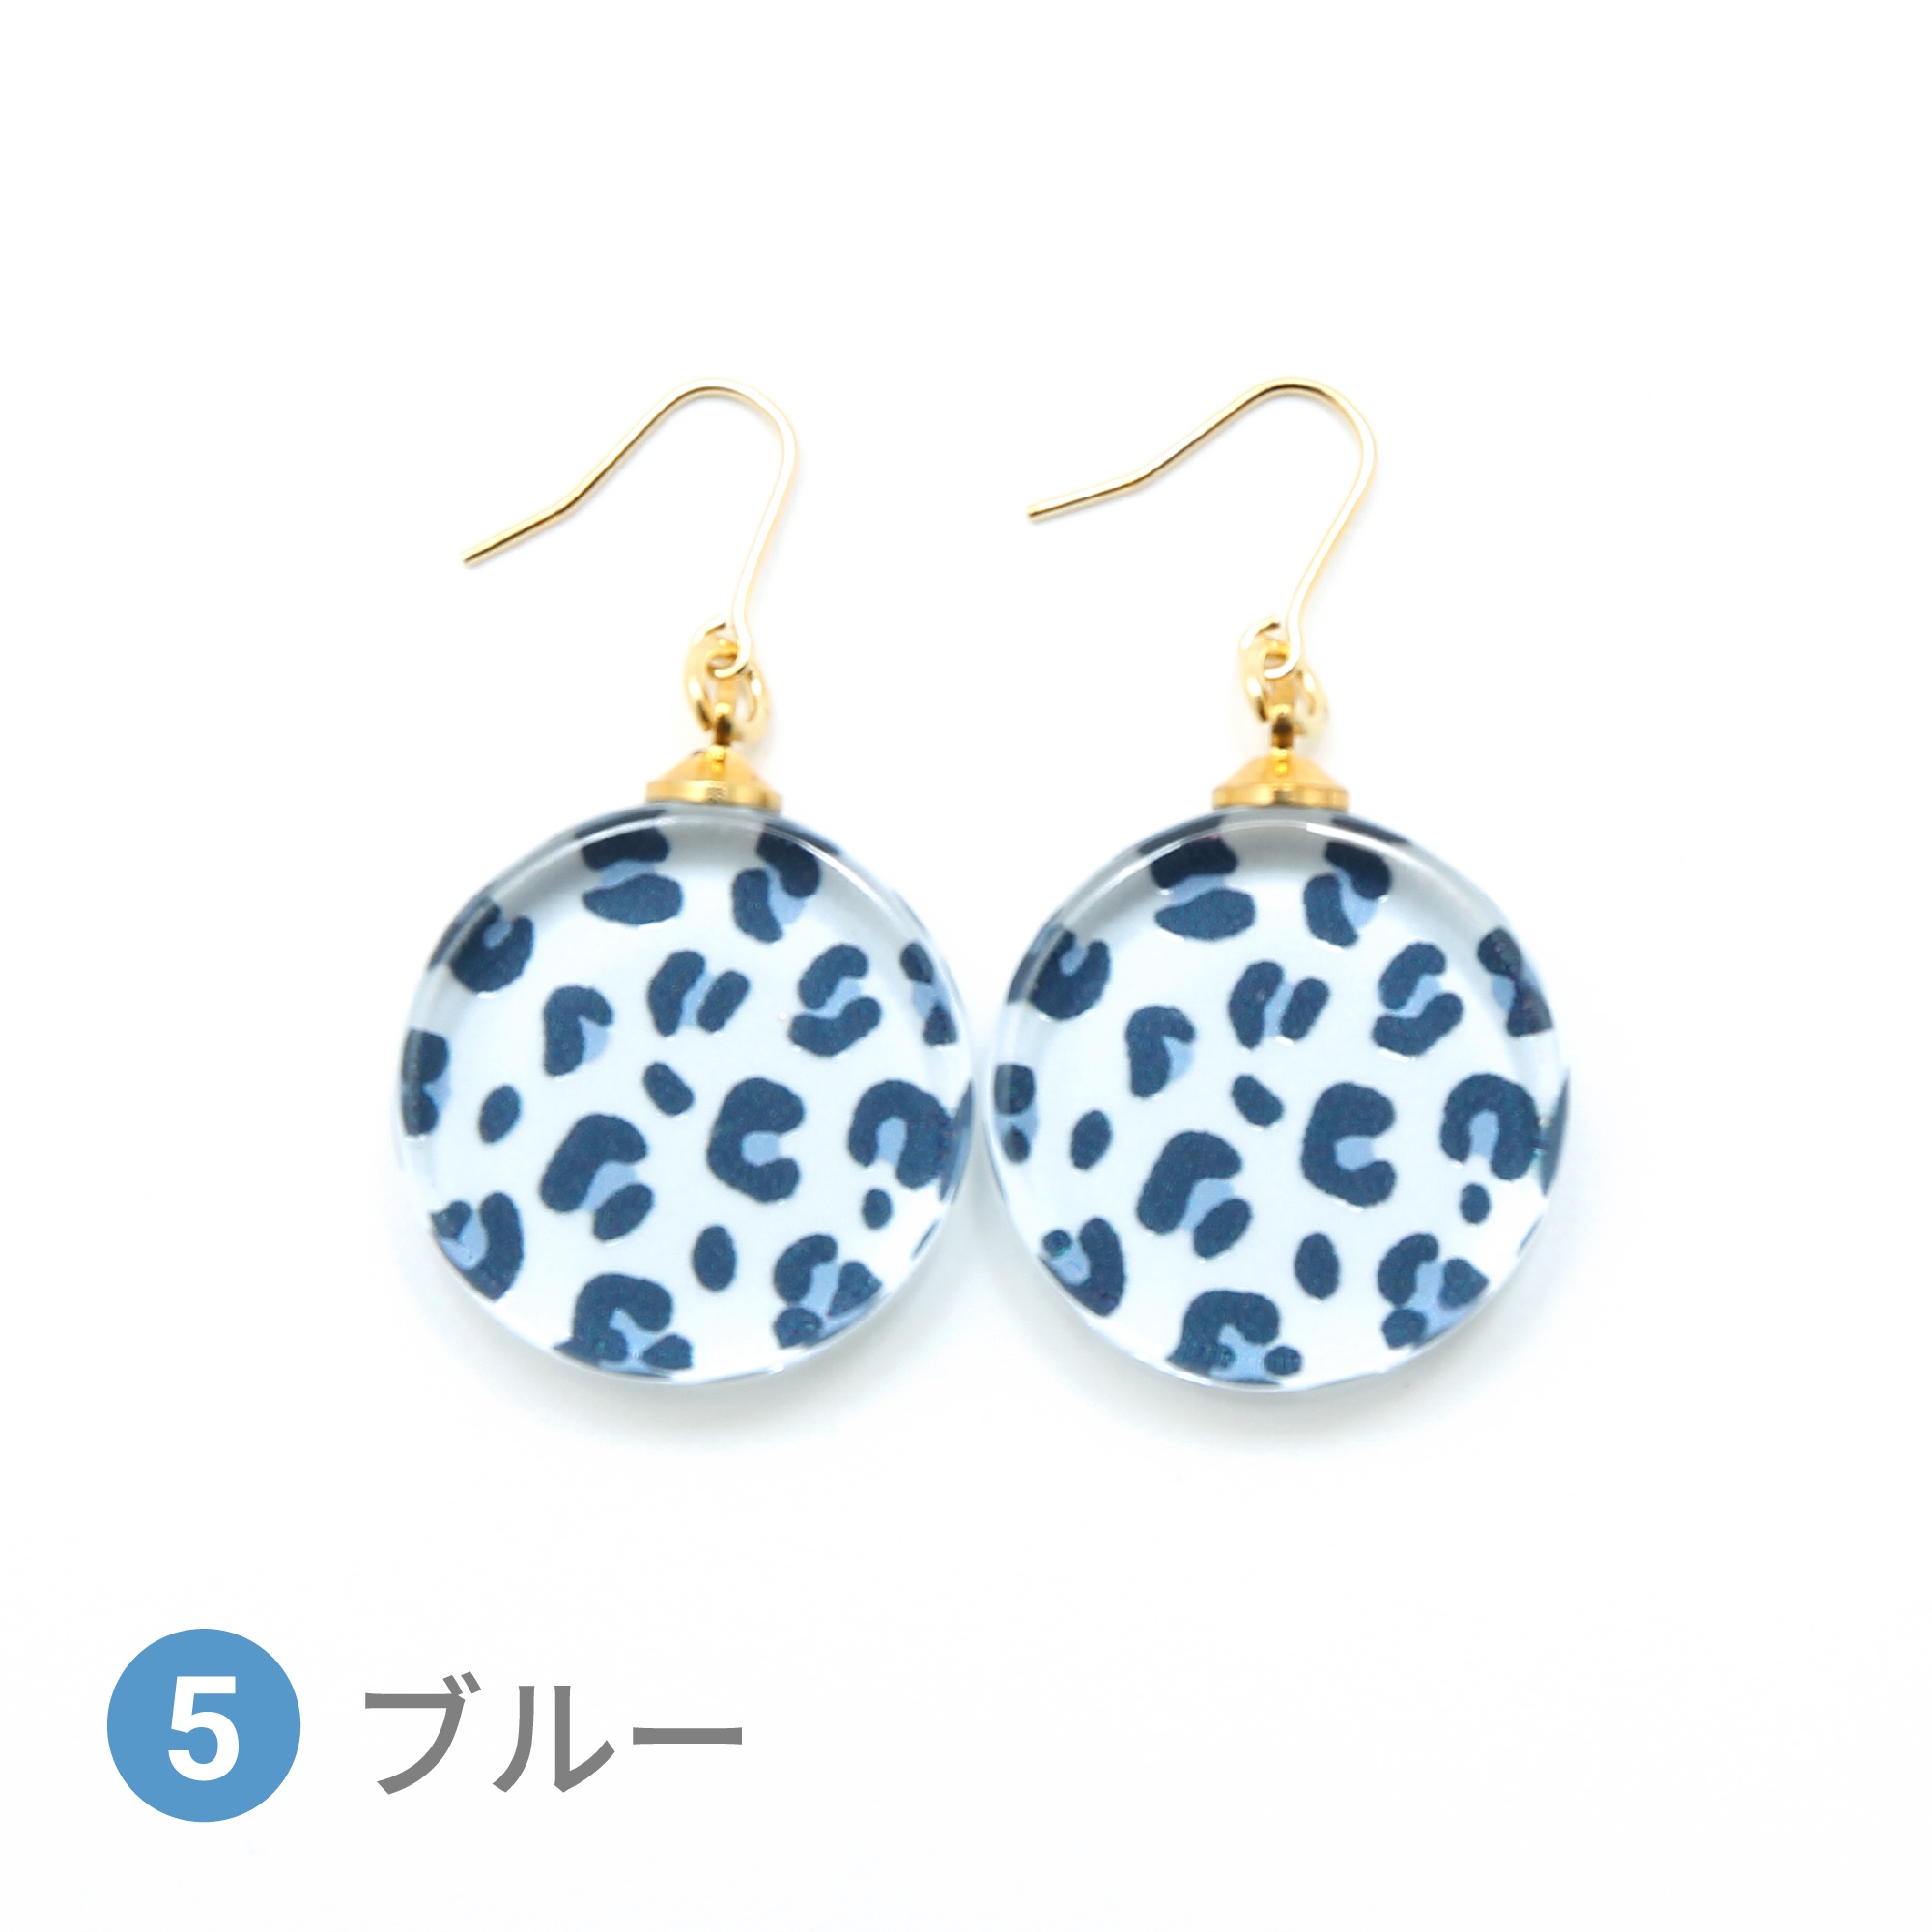 Glass accessories Pierced Earring LEOPARD blue round shape